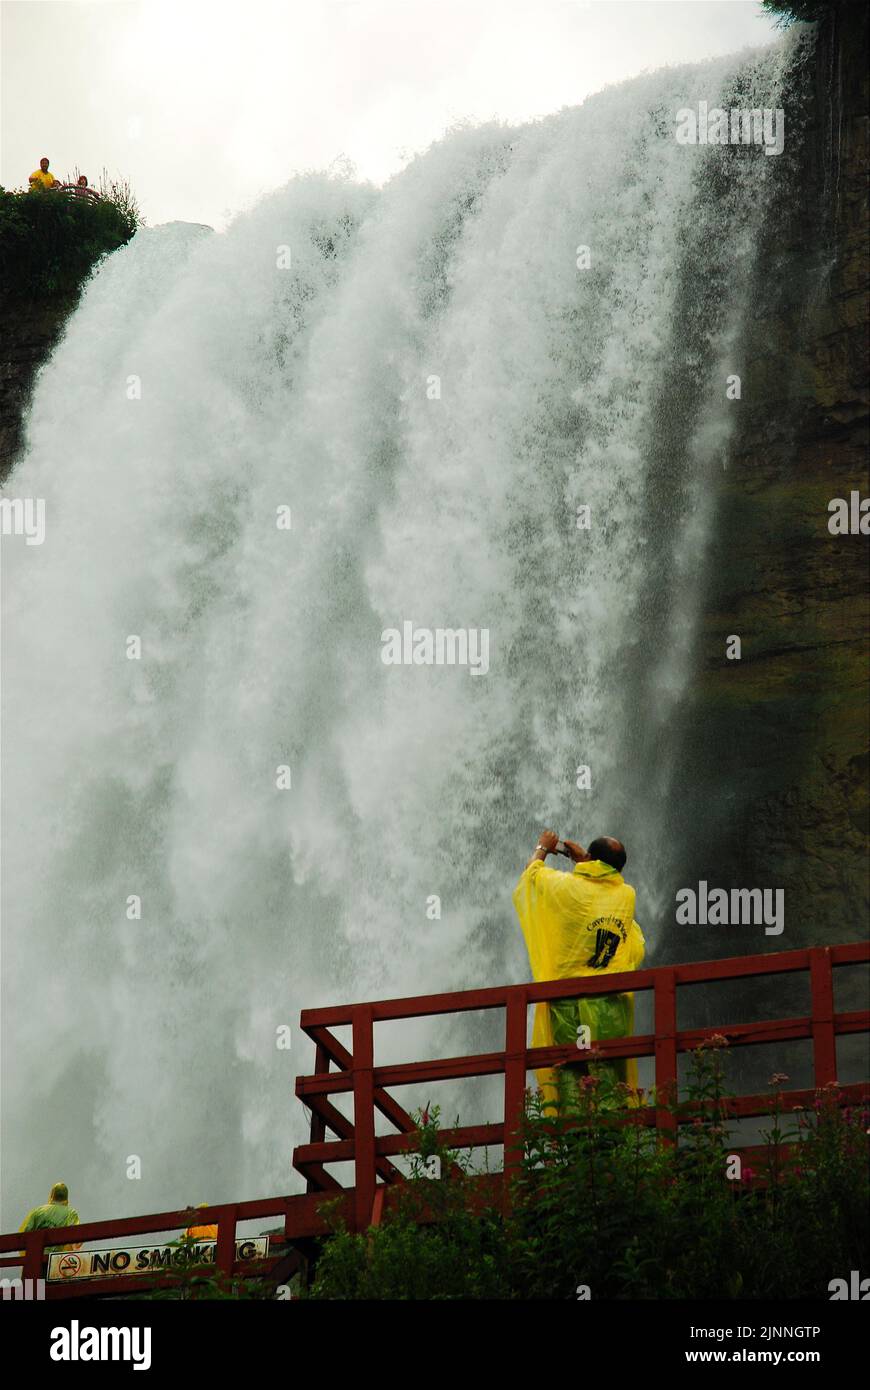 Deux visiteurs à ponchos jaunes prennent la vue de la puissance des chutes du Niagara depuis la base pendant la visite de la grotte des vents Banque D'Images